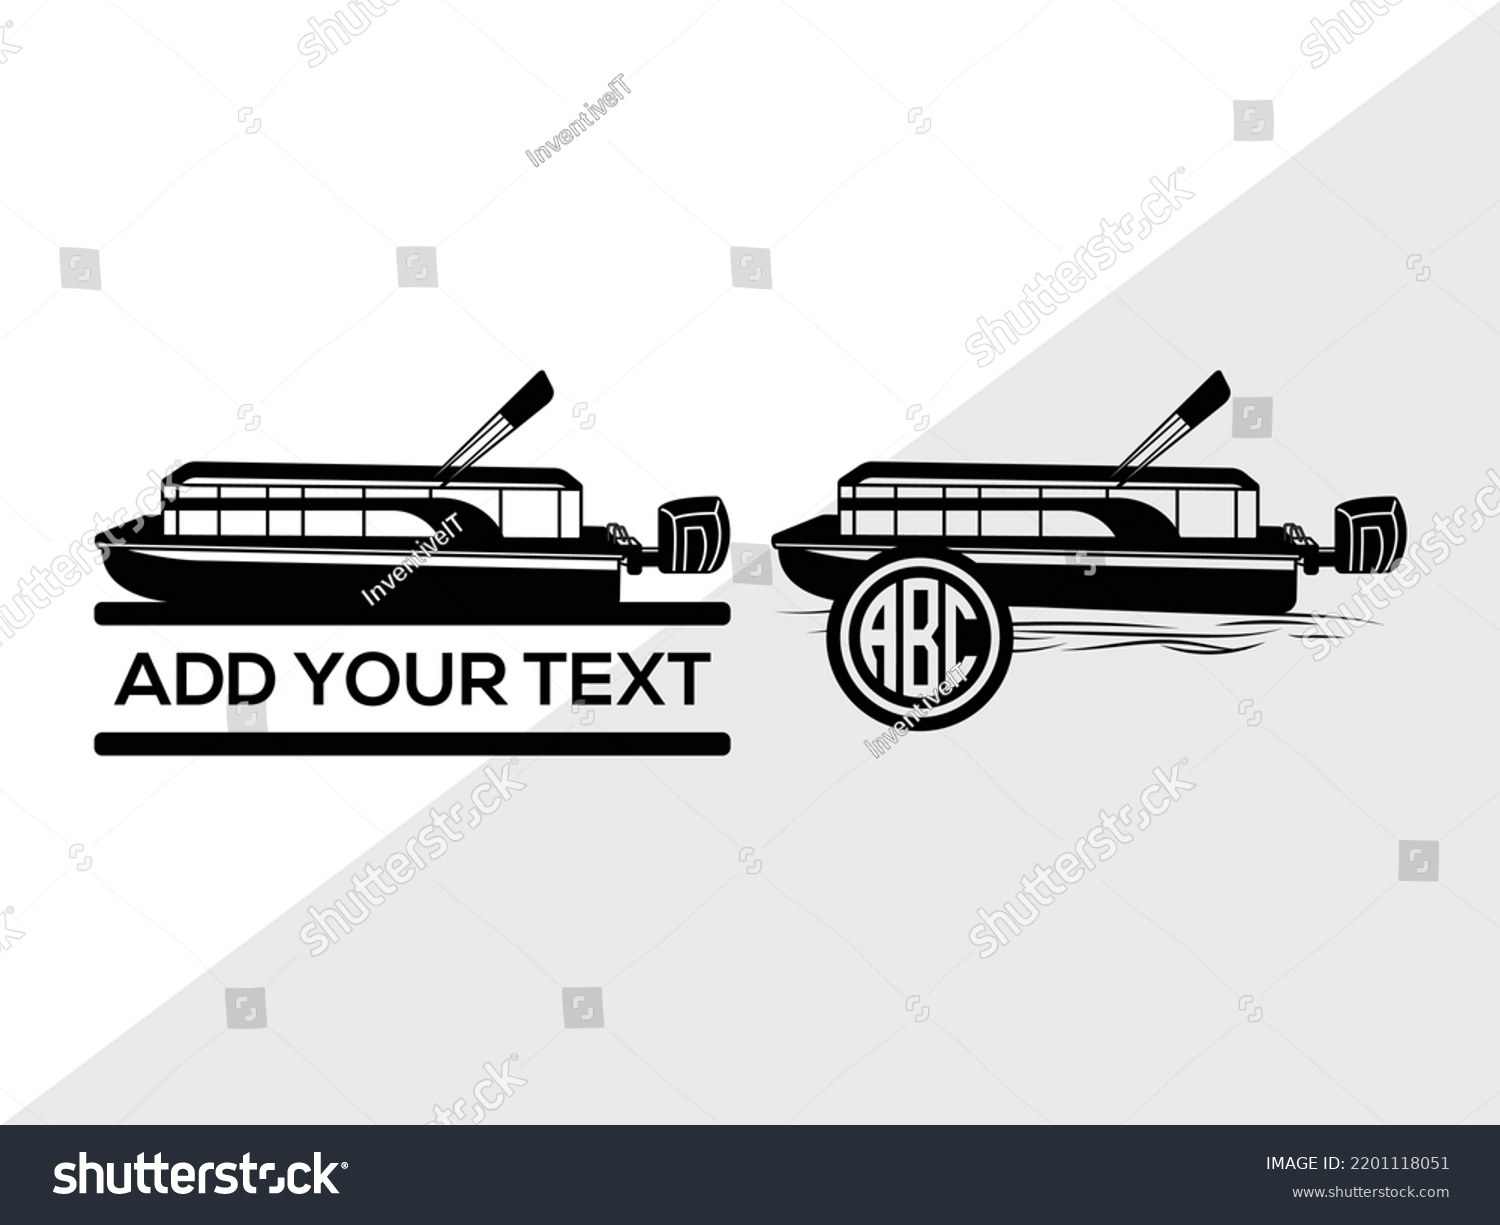 SVG of Pontoon Boat SVG Printable Vector Illustration svg